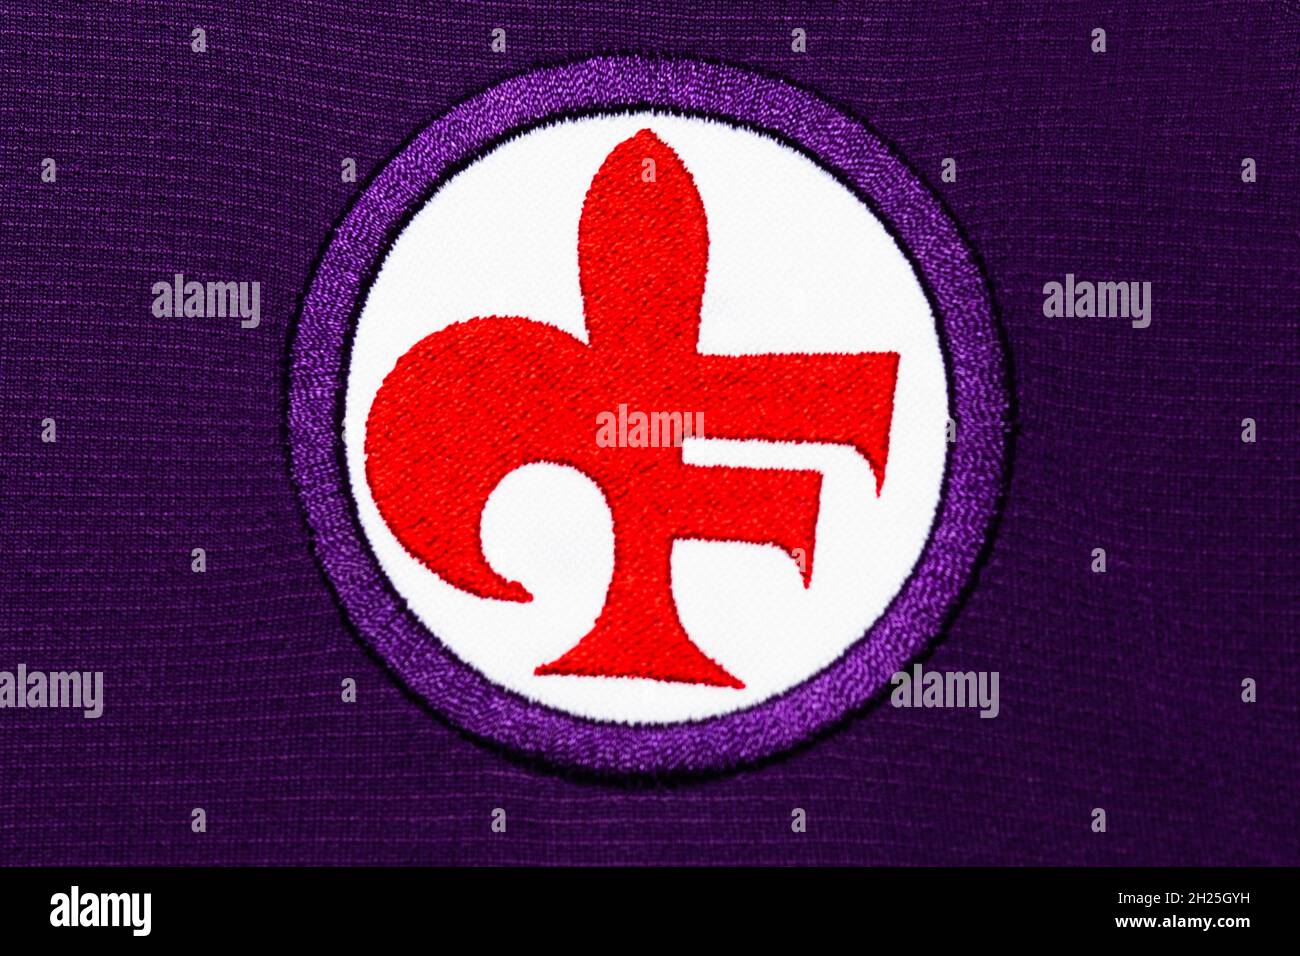 Close up of Fiorentina club crest. Stock Photo